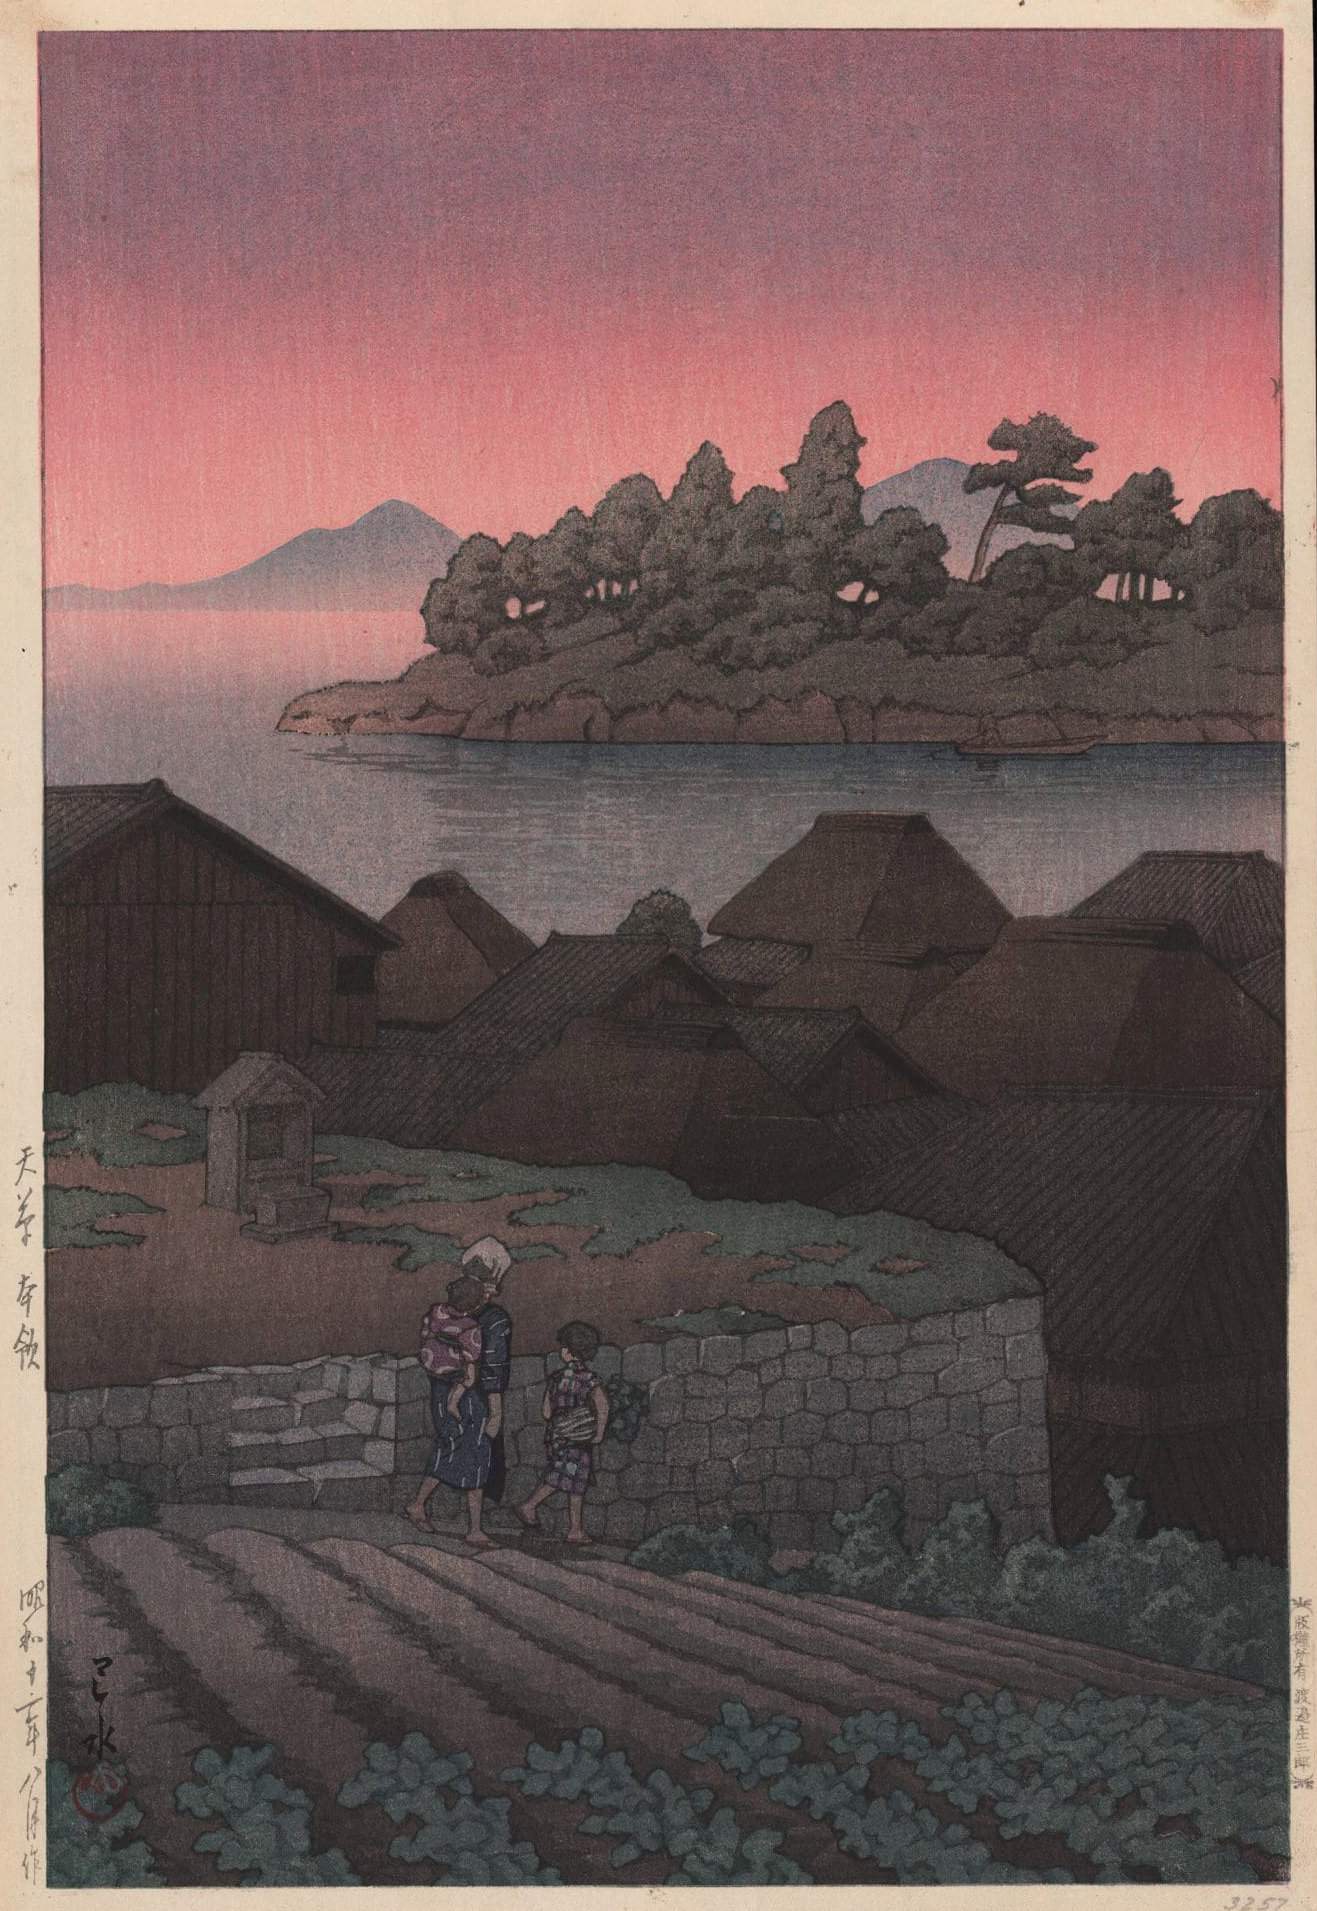 Goryo, Amakusa - Kawase Hasui Catalogue woodblock print